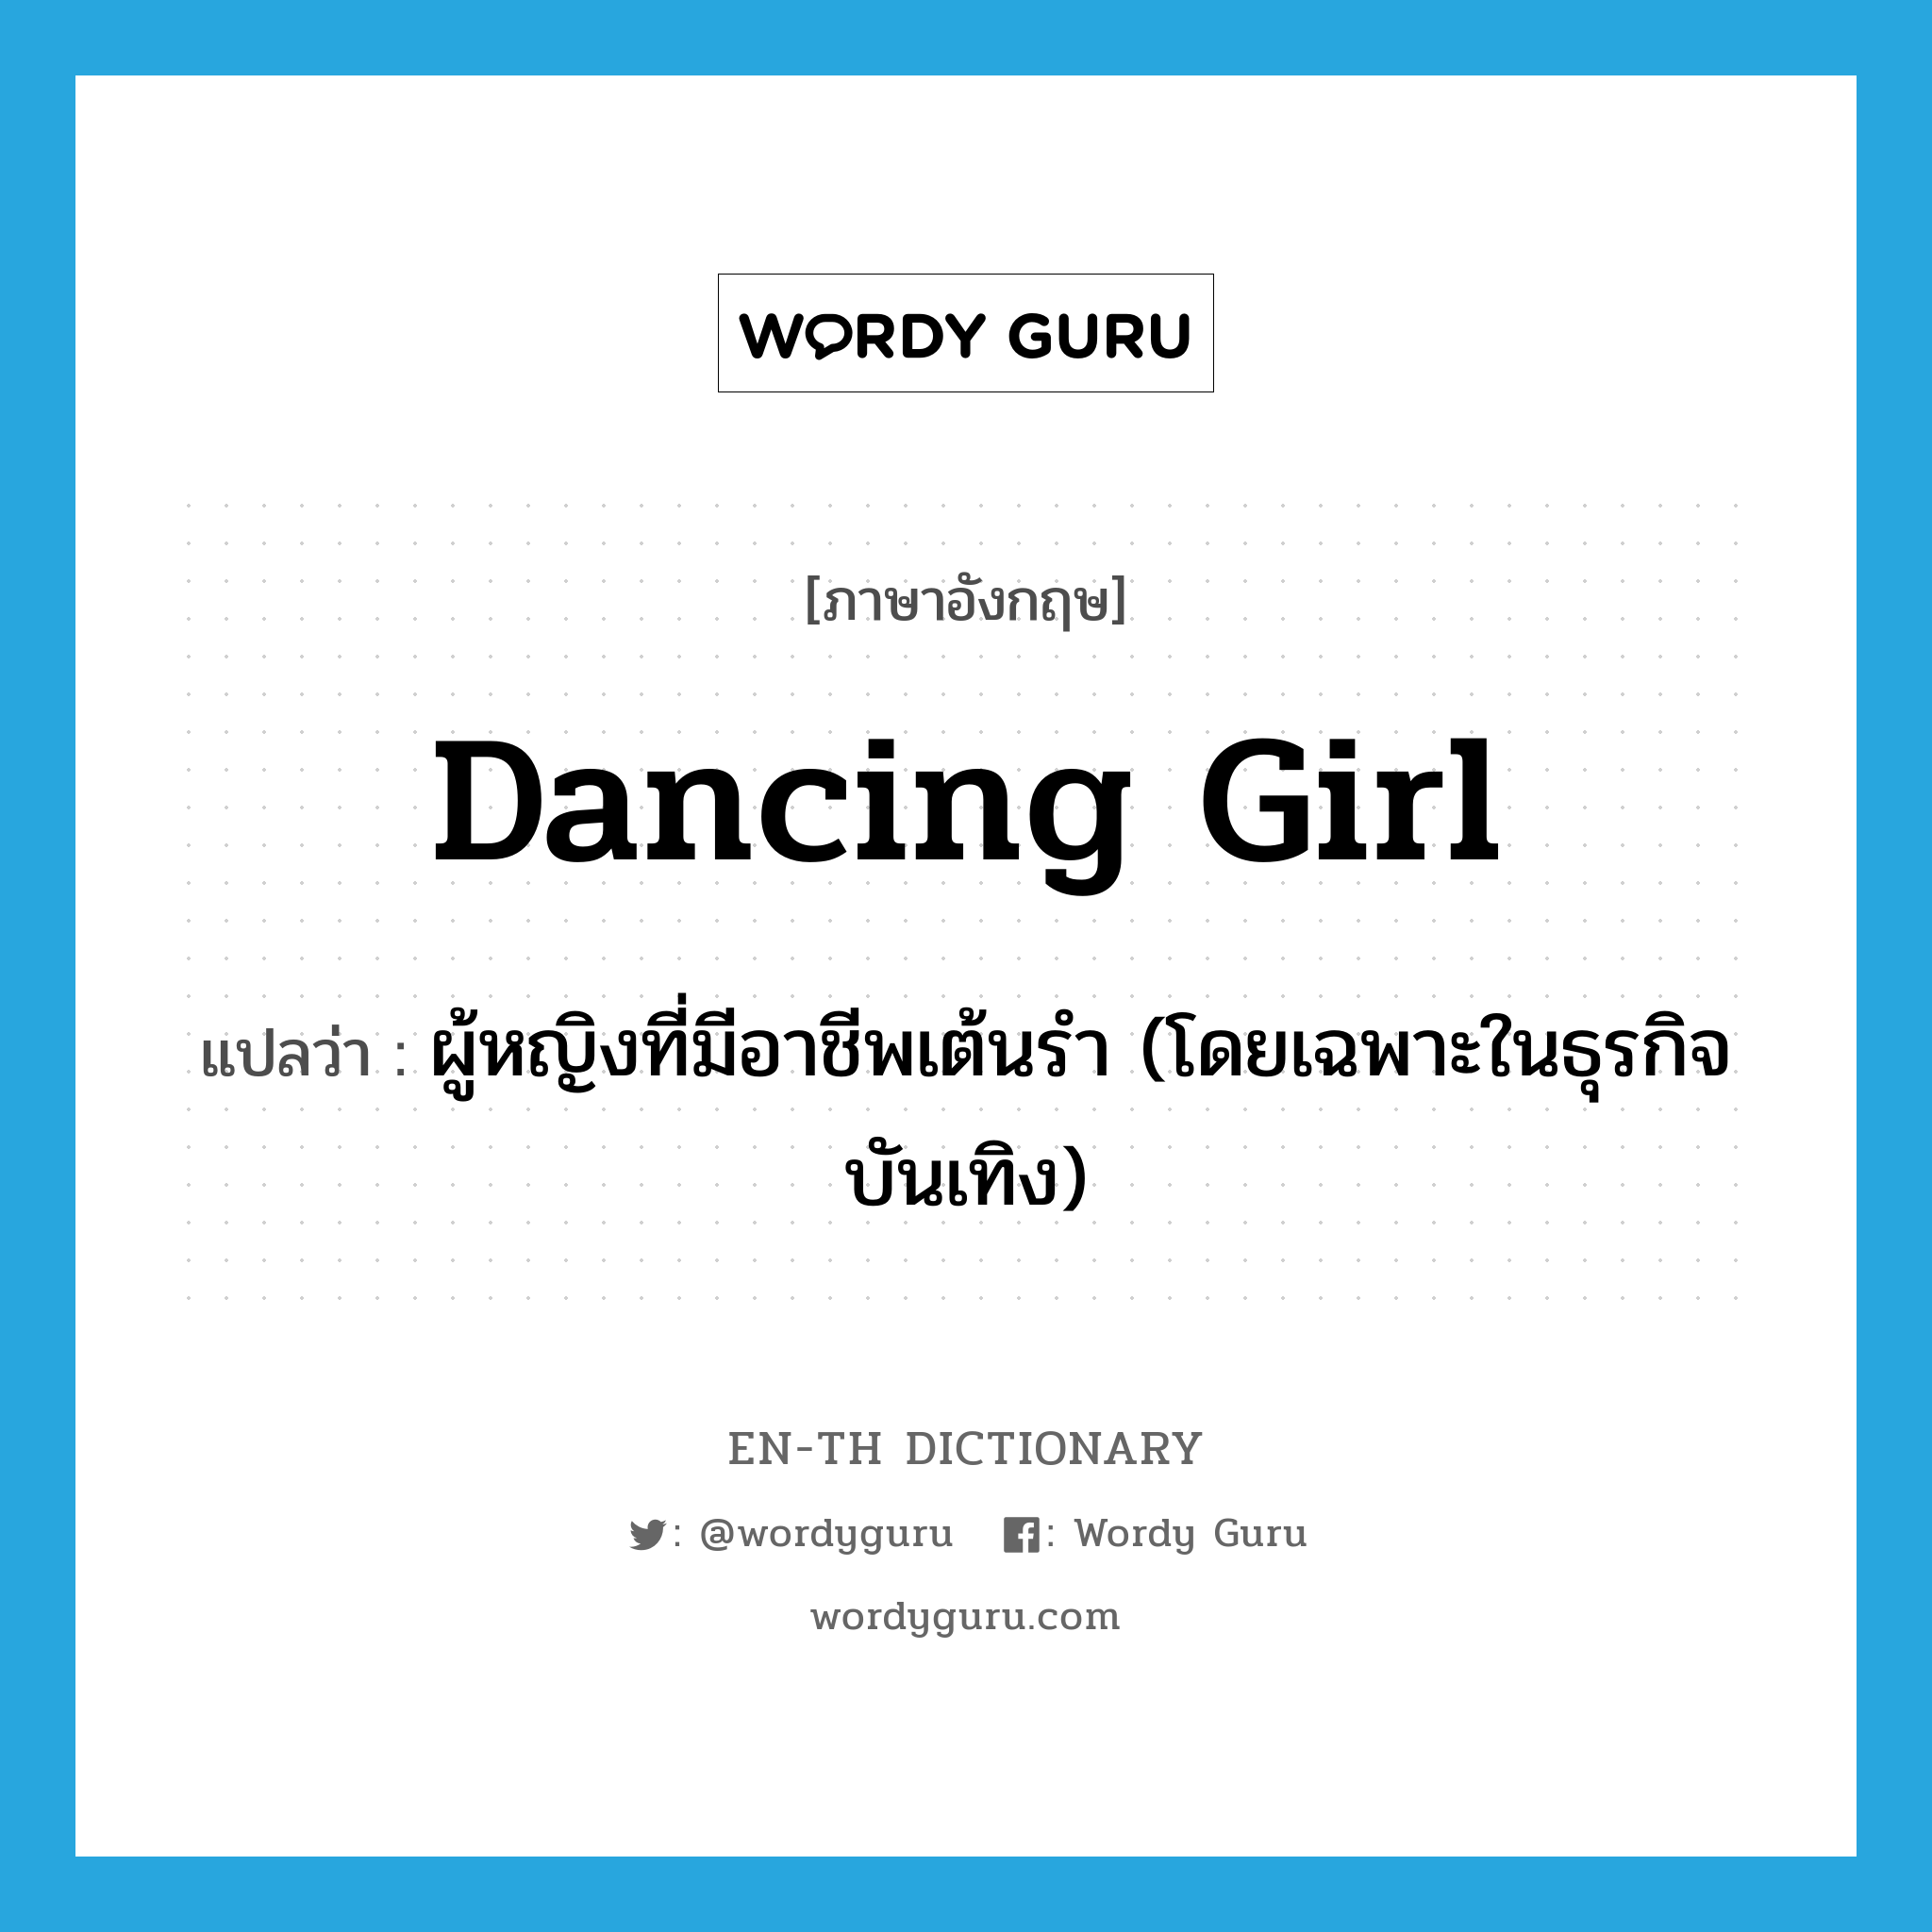 ผู้หญิงที่มีอาชีพเต้นรำ (โดยเฉพาะในธุรกิจบันเทิง) ภาษาอังกฤษ?, คำศัพท์ภาษาอังกฤษ ผู้หญิงที่มีอาชีพเต้นรำ (โดยเฉพาะในธุรกิจบันเทิง) แปลว่า dancing girl ประเภท N หมวด N